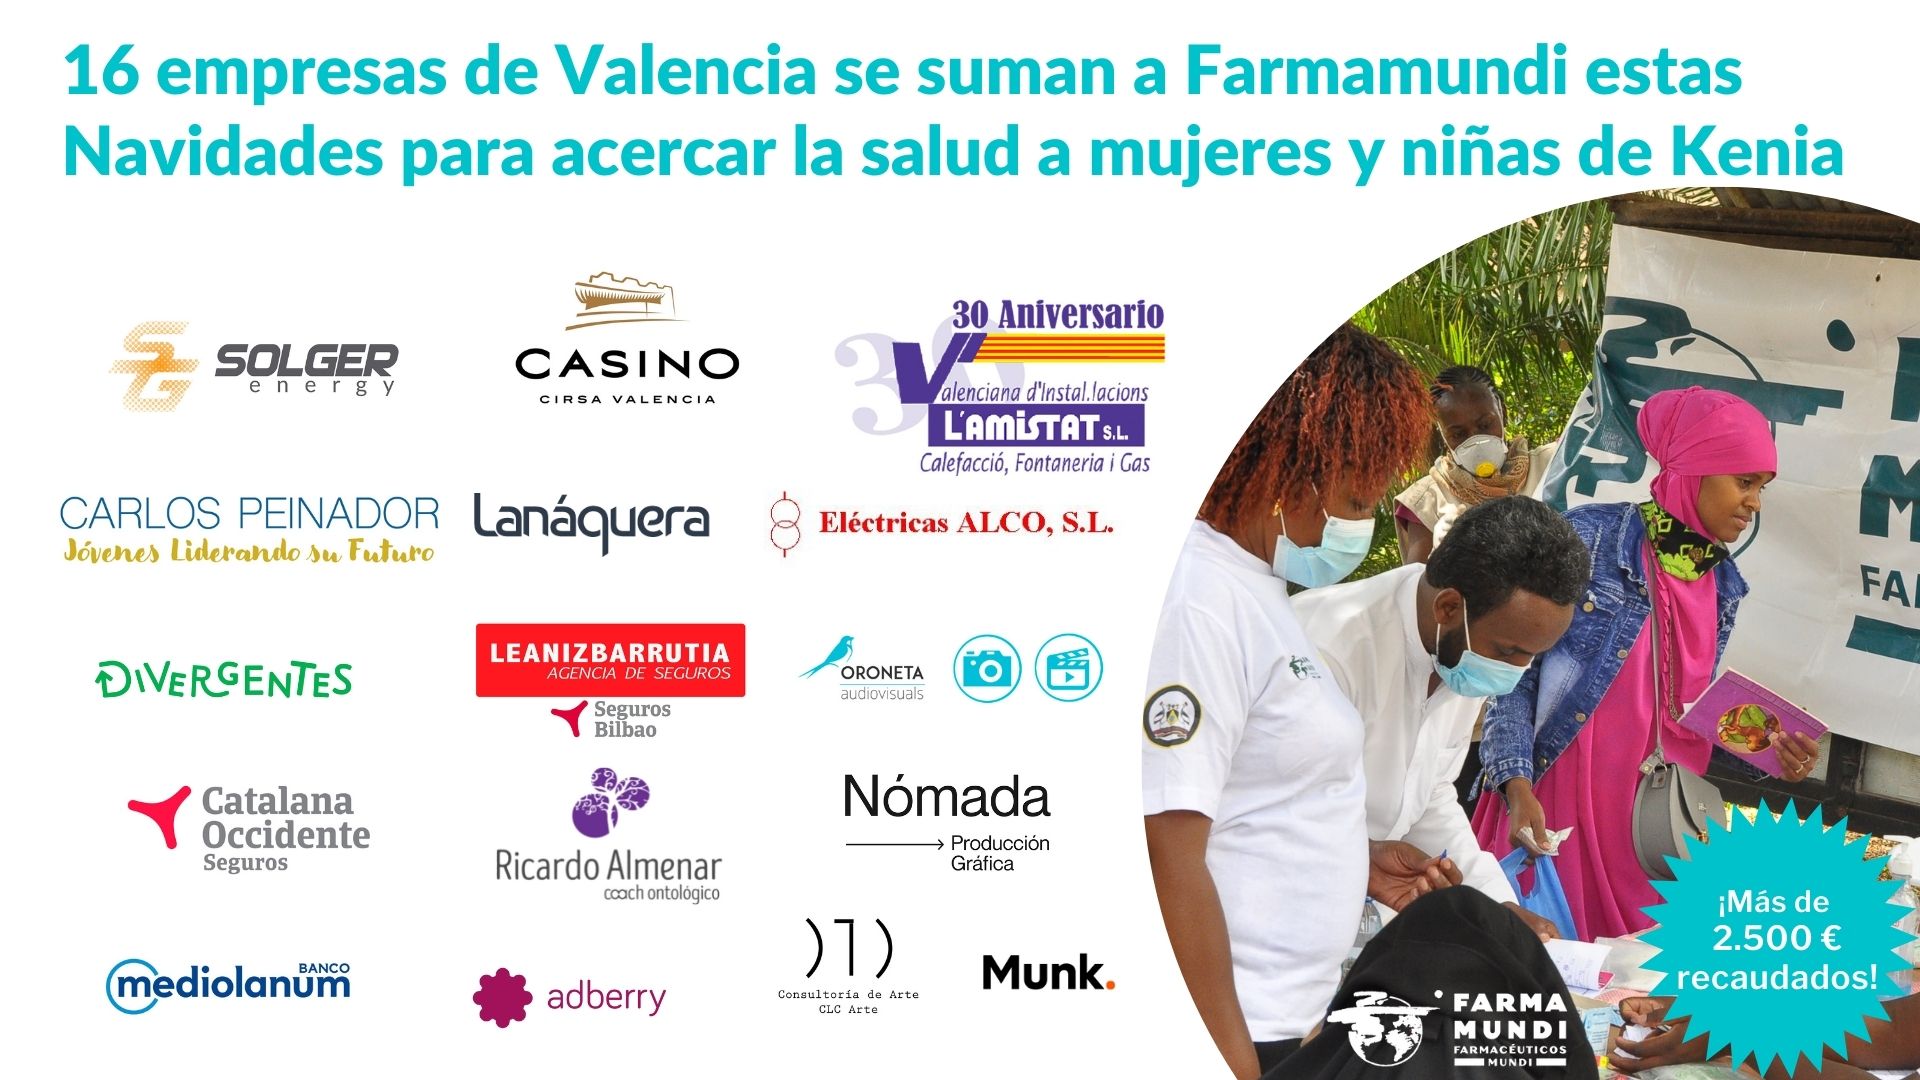 RSE | 16 empresas de Valencia se unen a Farmamundi para suministrar kits sanitarios a Kenia